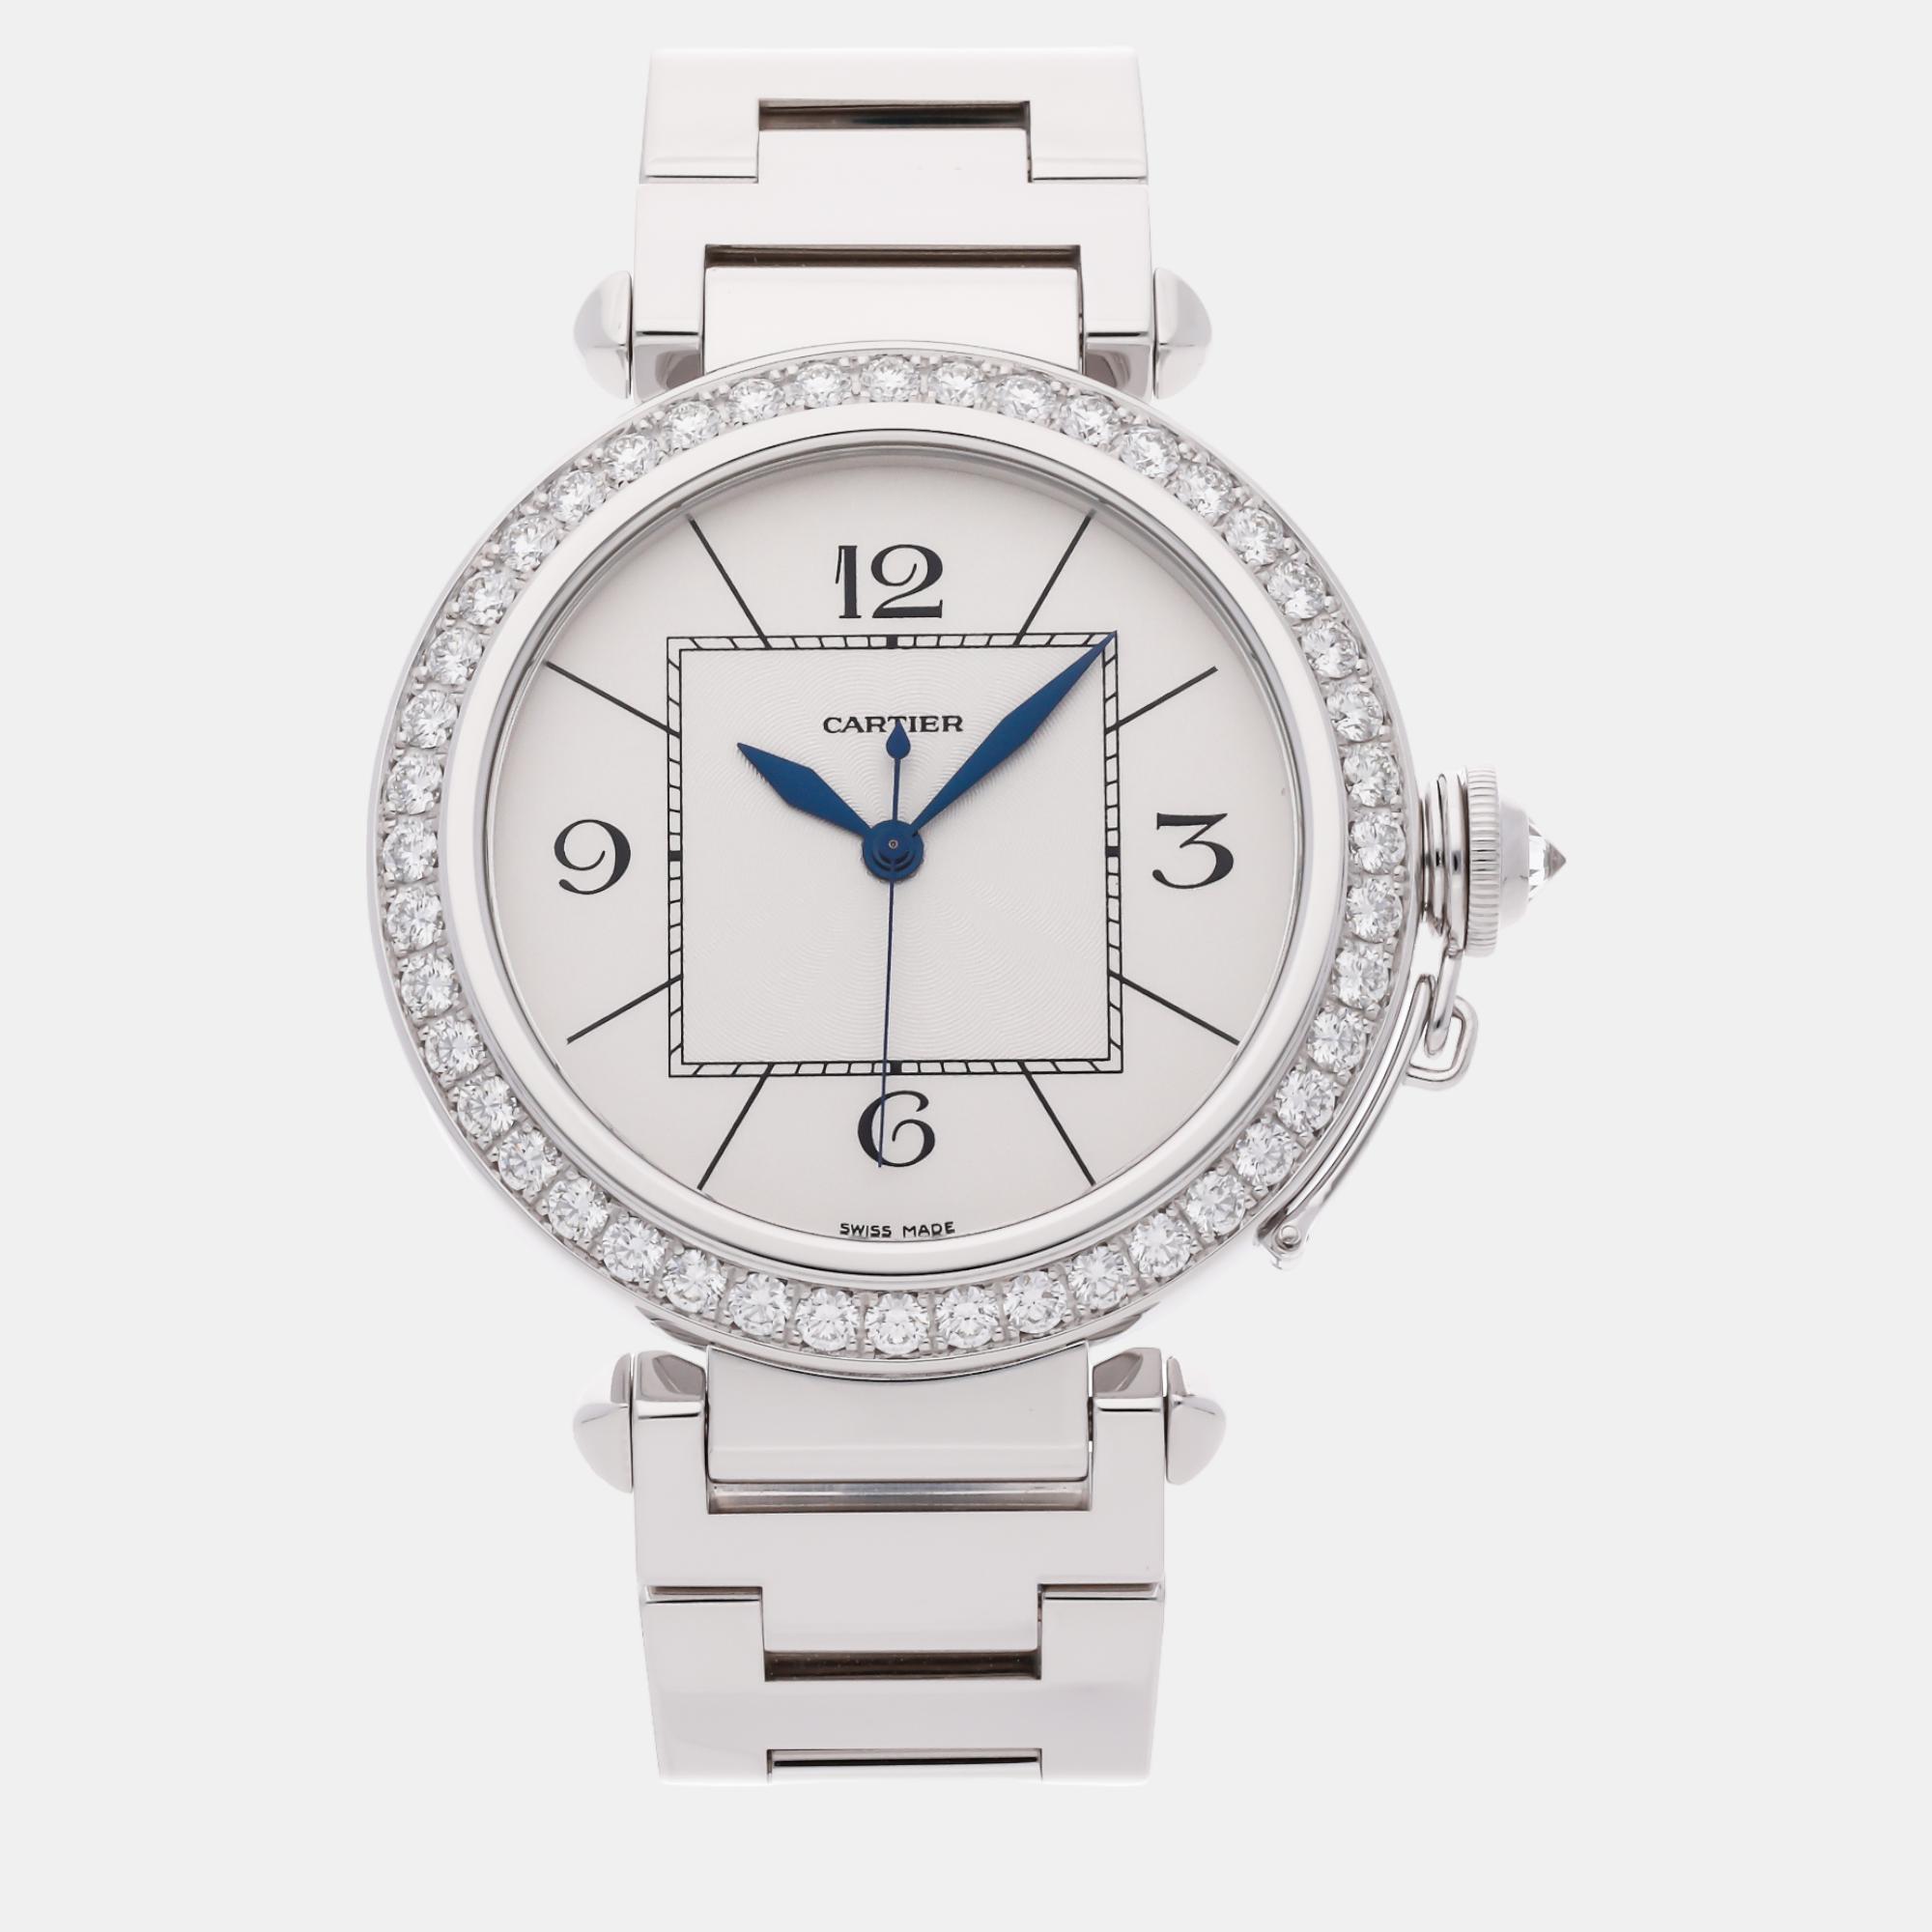 Cartier silver 18k white gold pasha de cartier wj118751 automatic men's wristwatch 42 mm